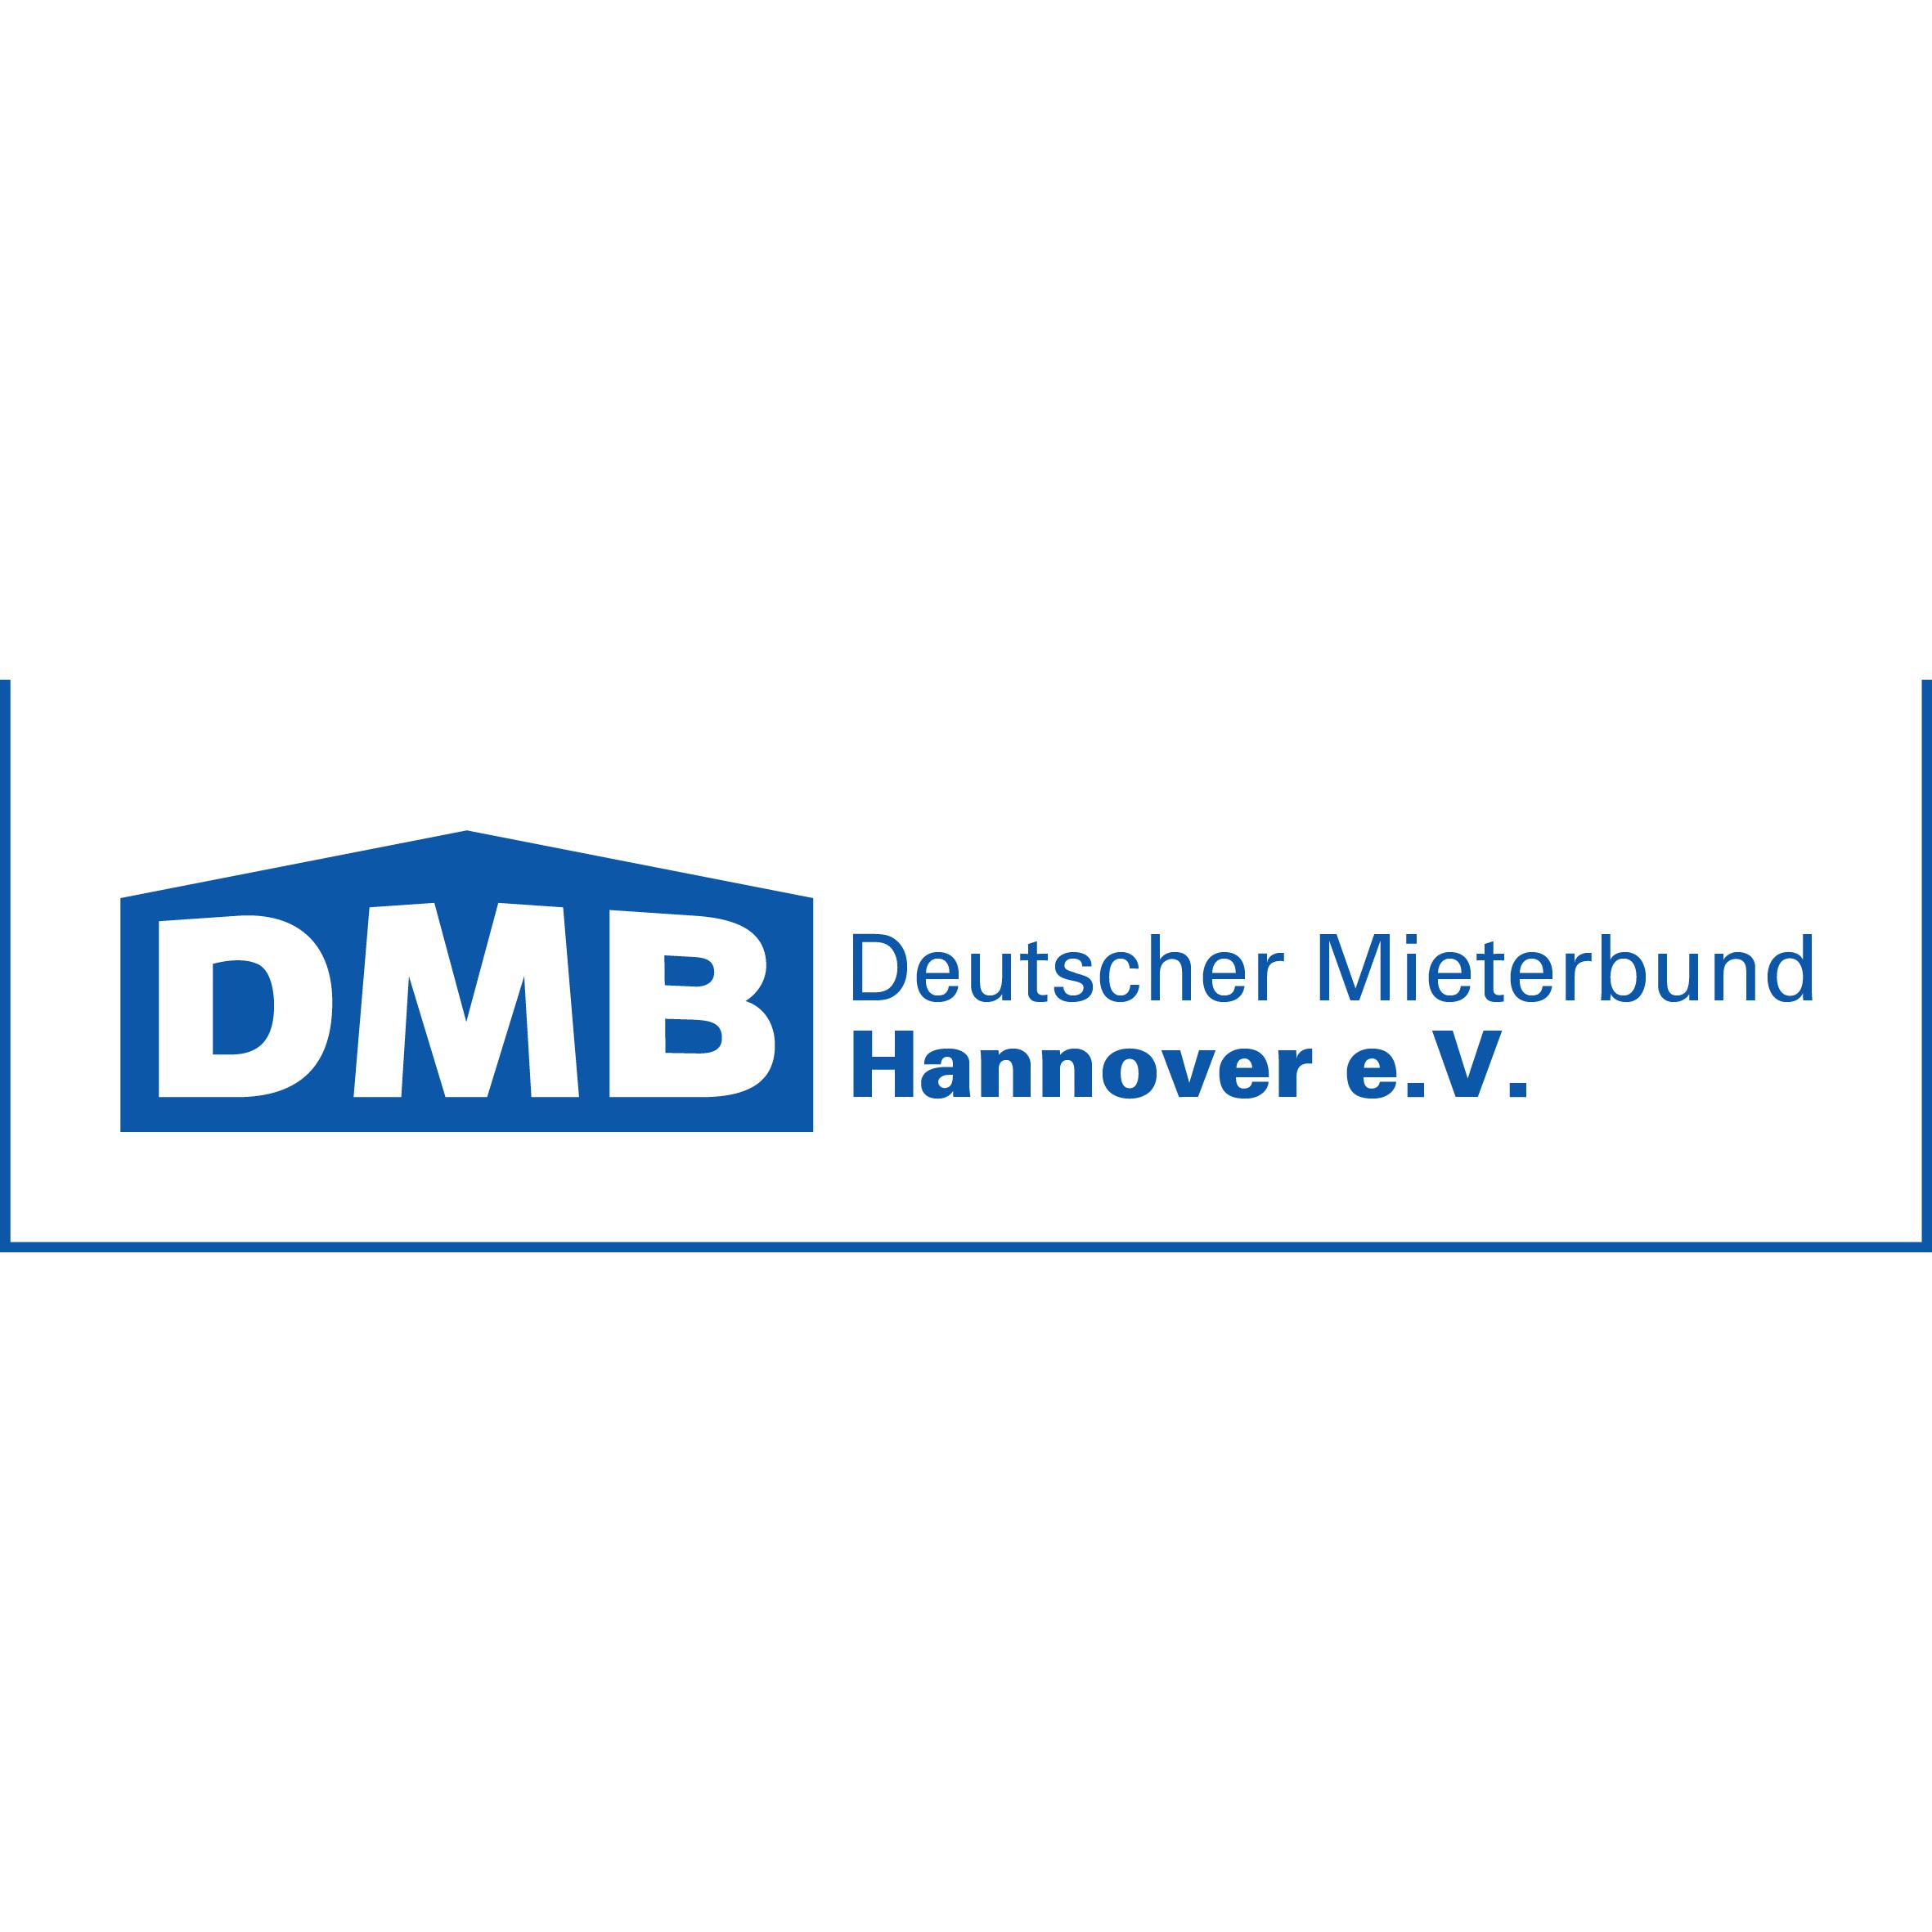 DMB Deutscher Mieterbund Hannover e.V. Logo